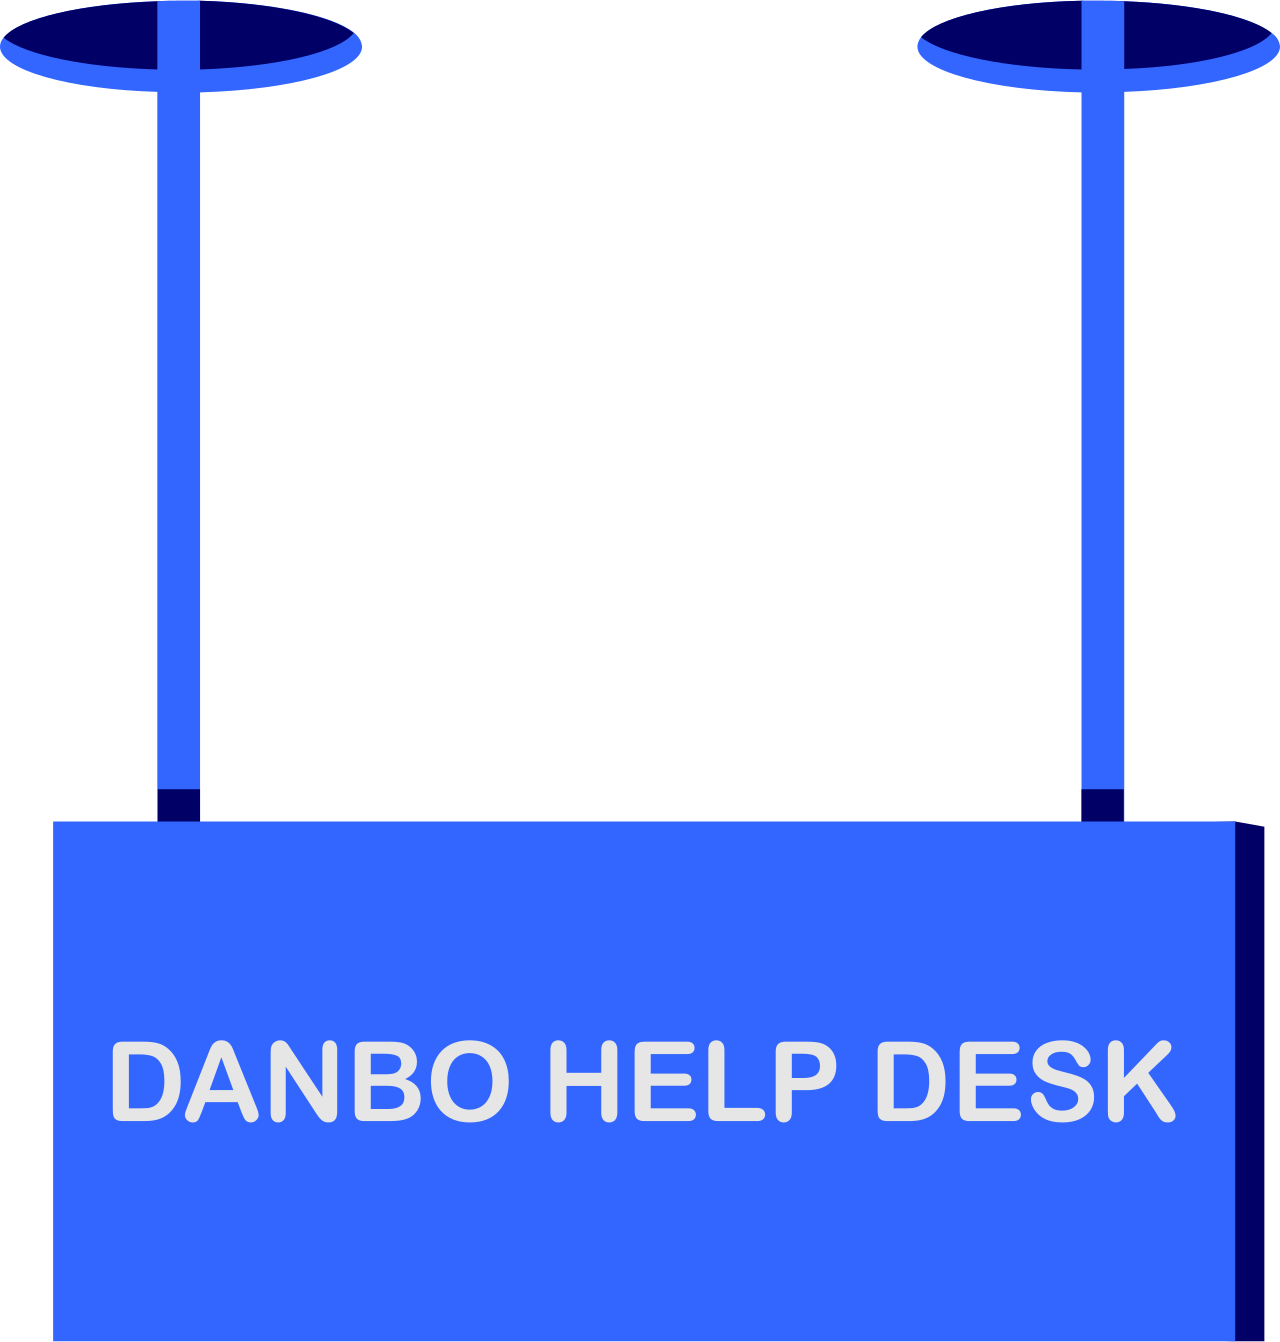 Danbo Help Desk